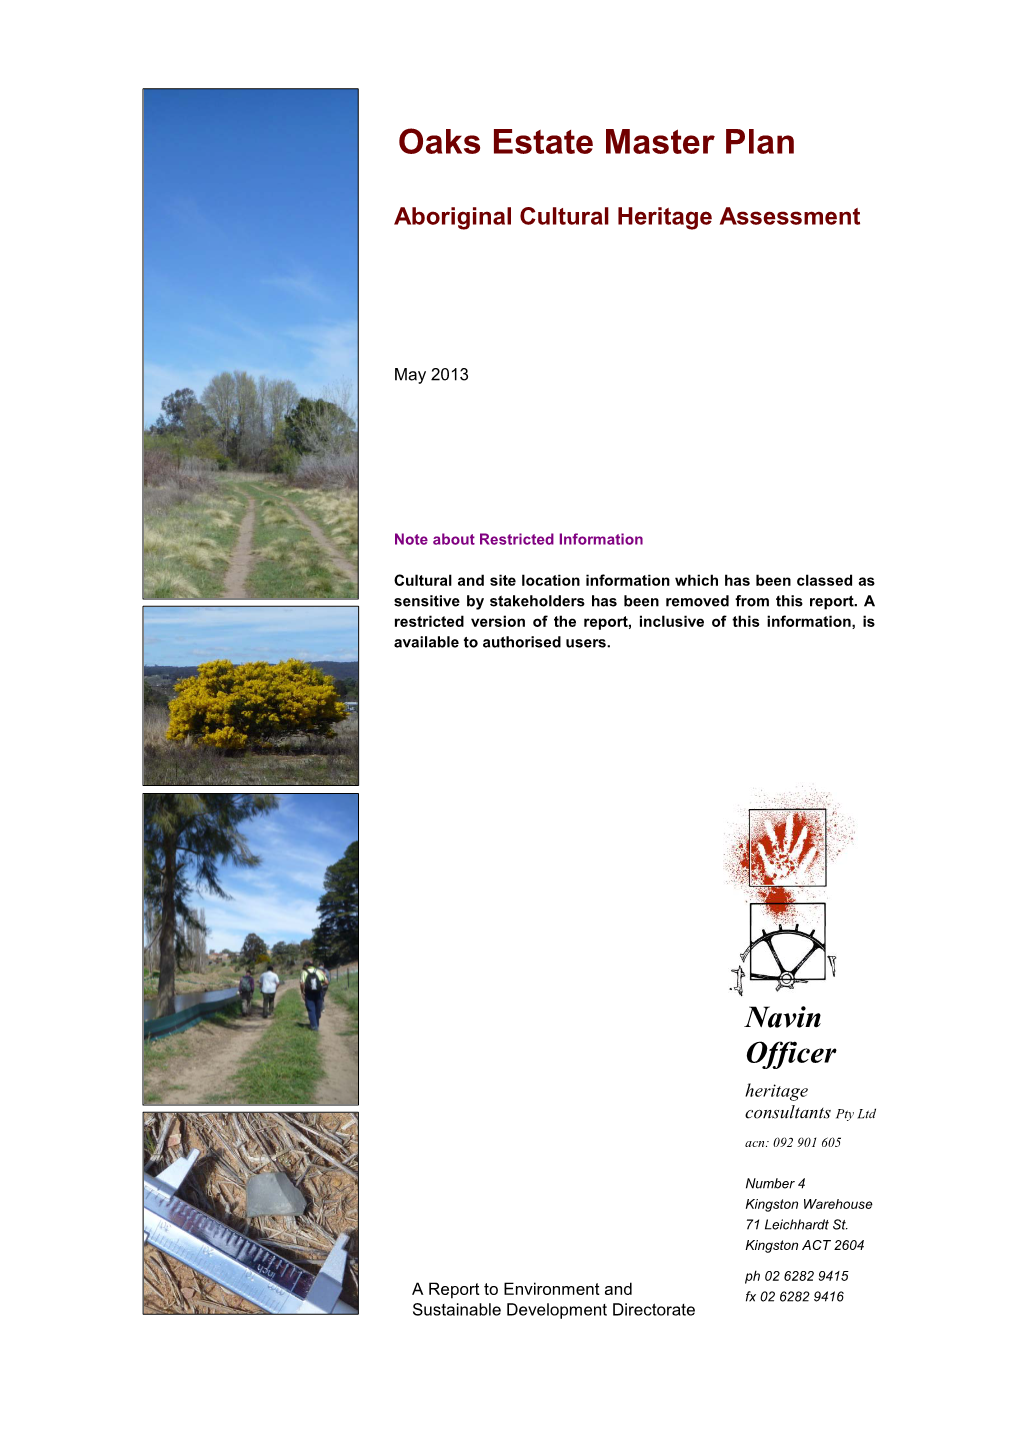 Oaks Estate Indigenous Heritage Assessment